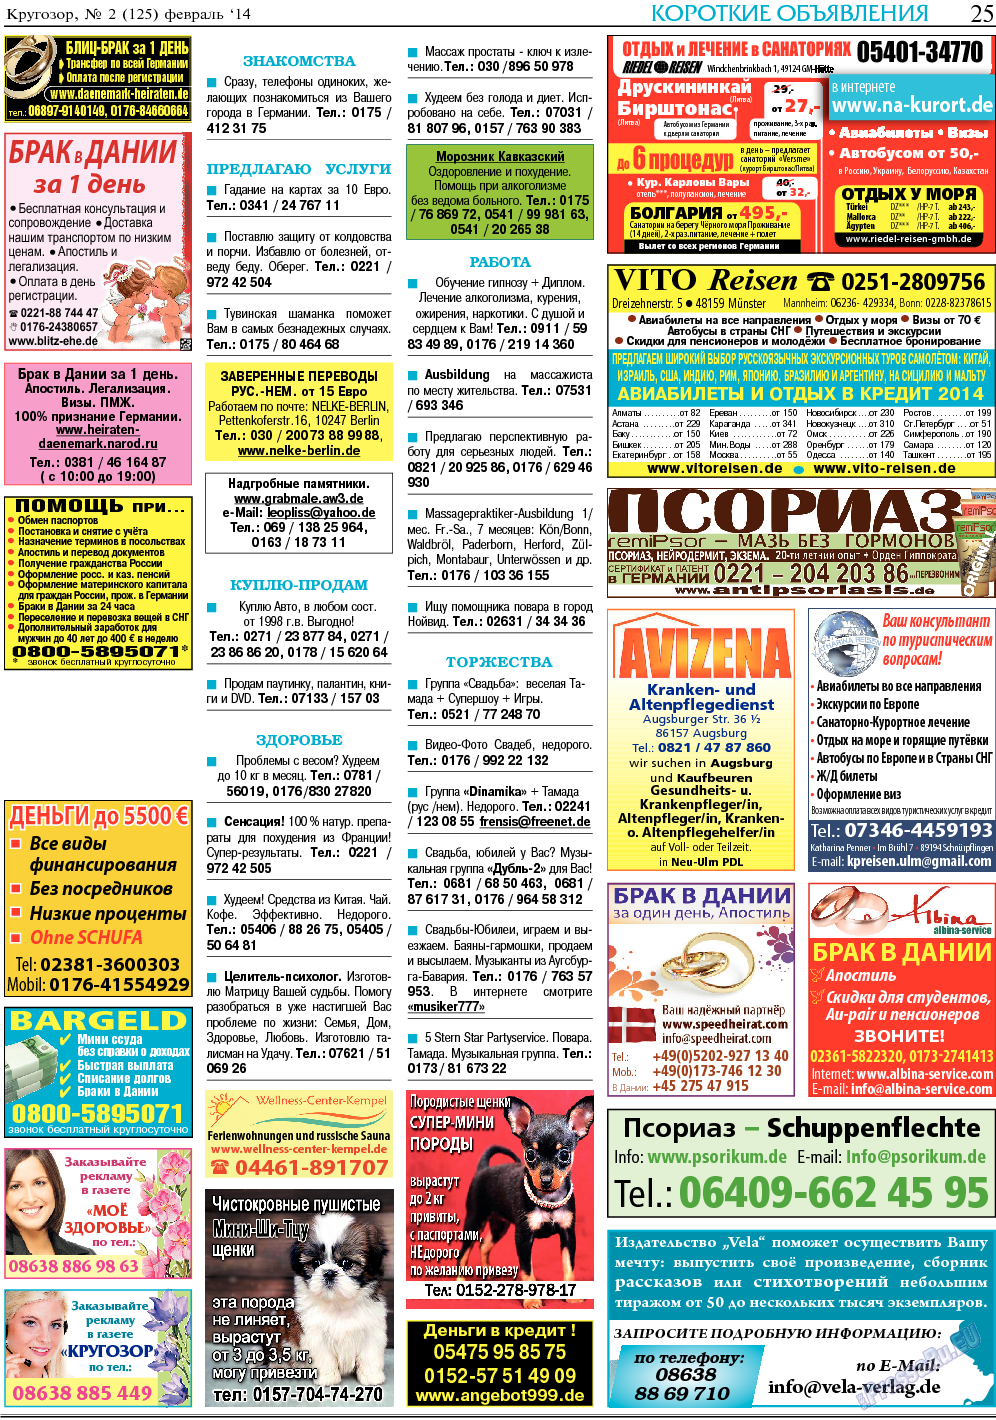 Кругозор (газета). 2014 год, номер 2, стр. 25